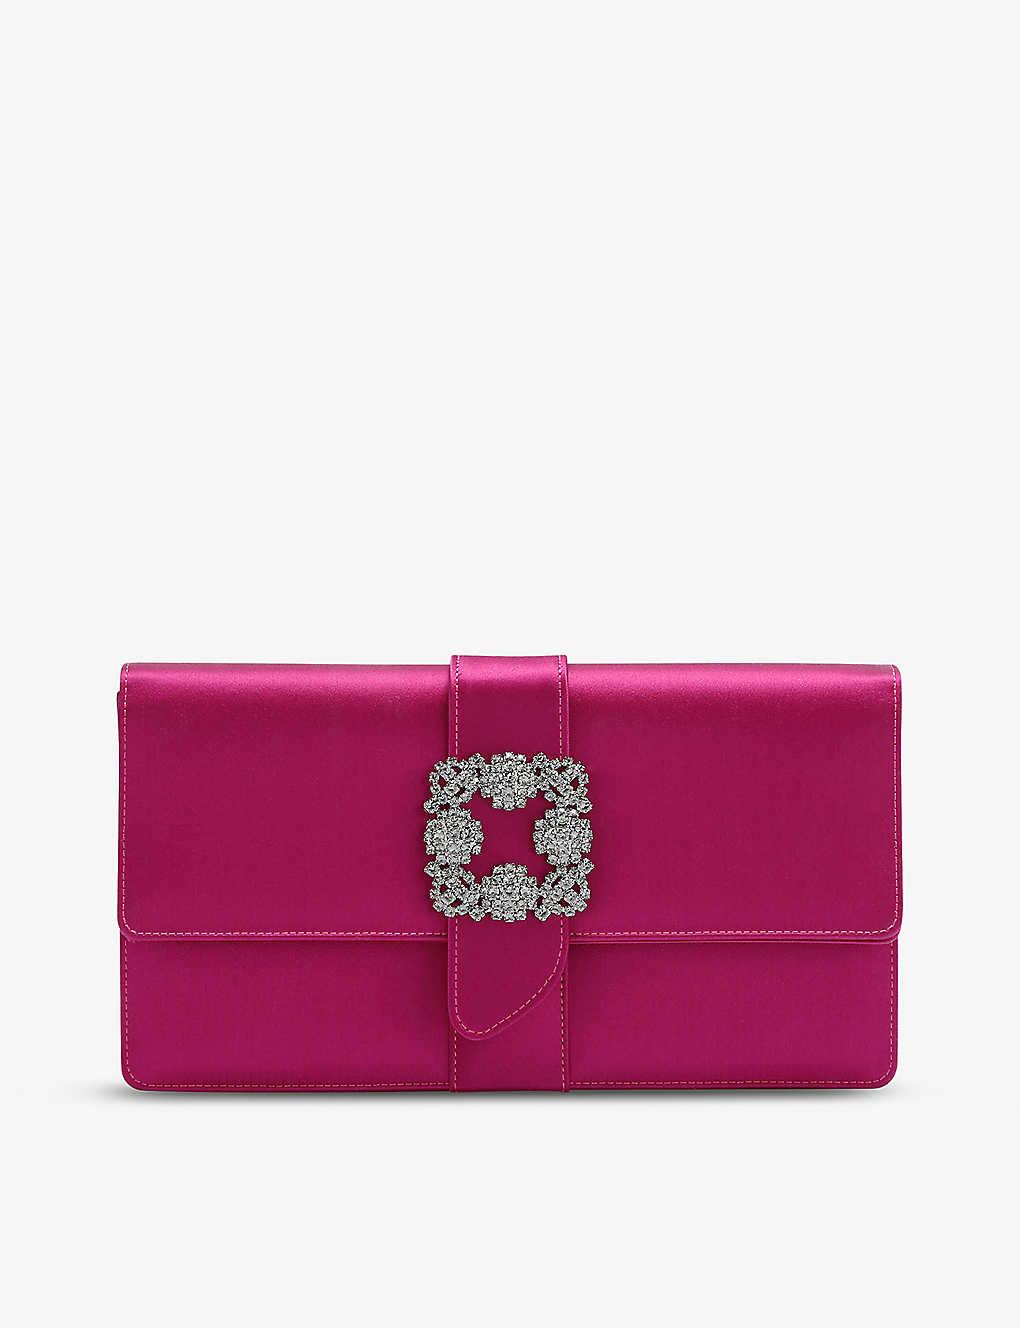 Manolo Blahnik Capri Crystal-embellished Satin Clutch Bag In Fuchsia